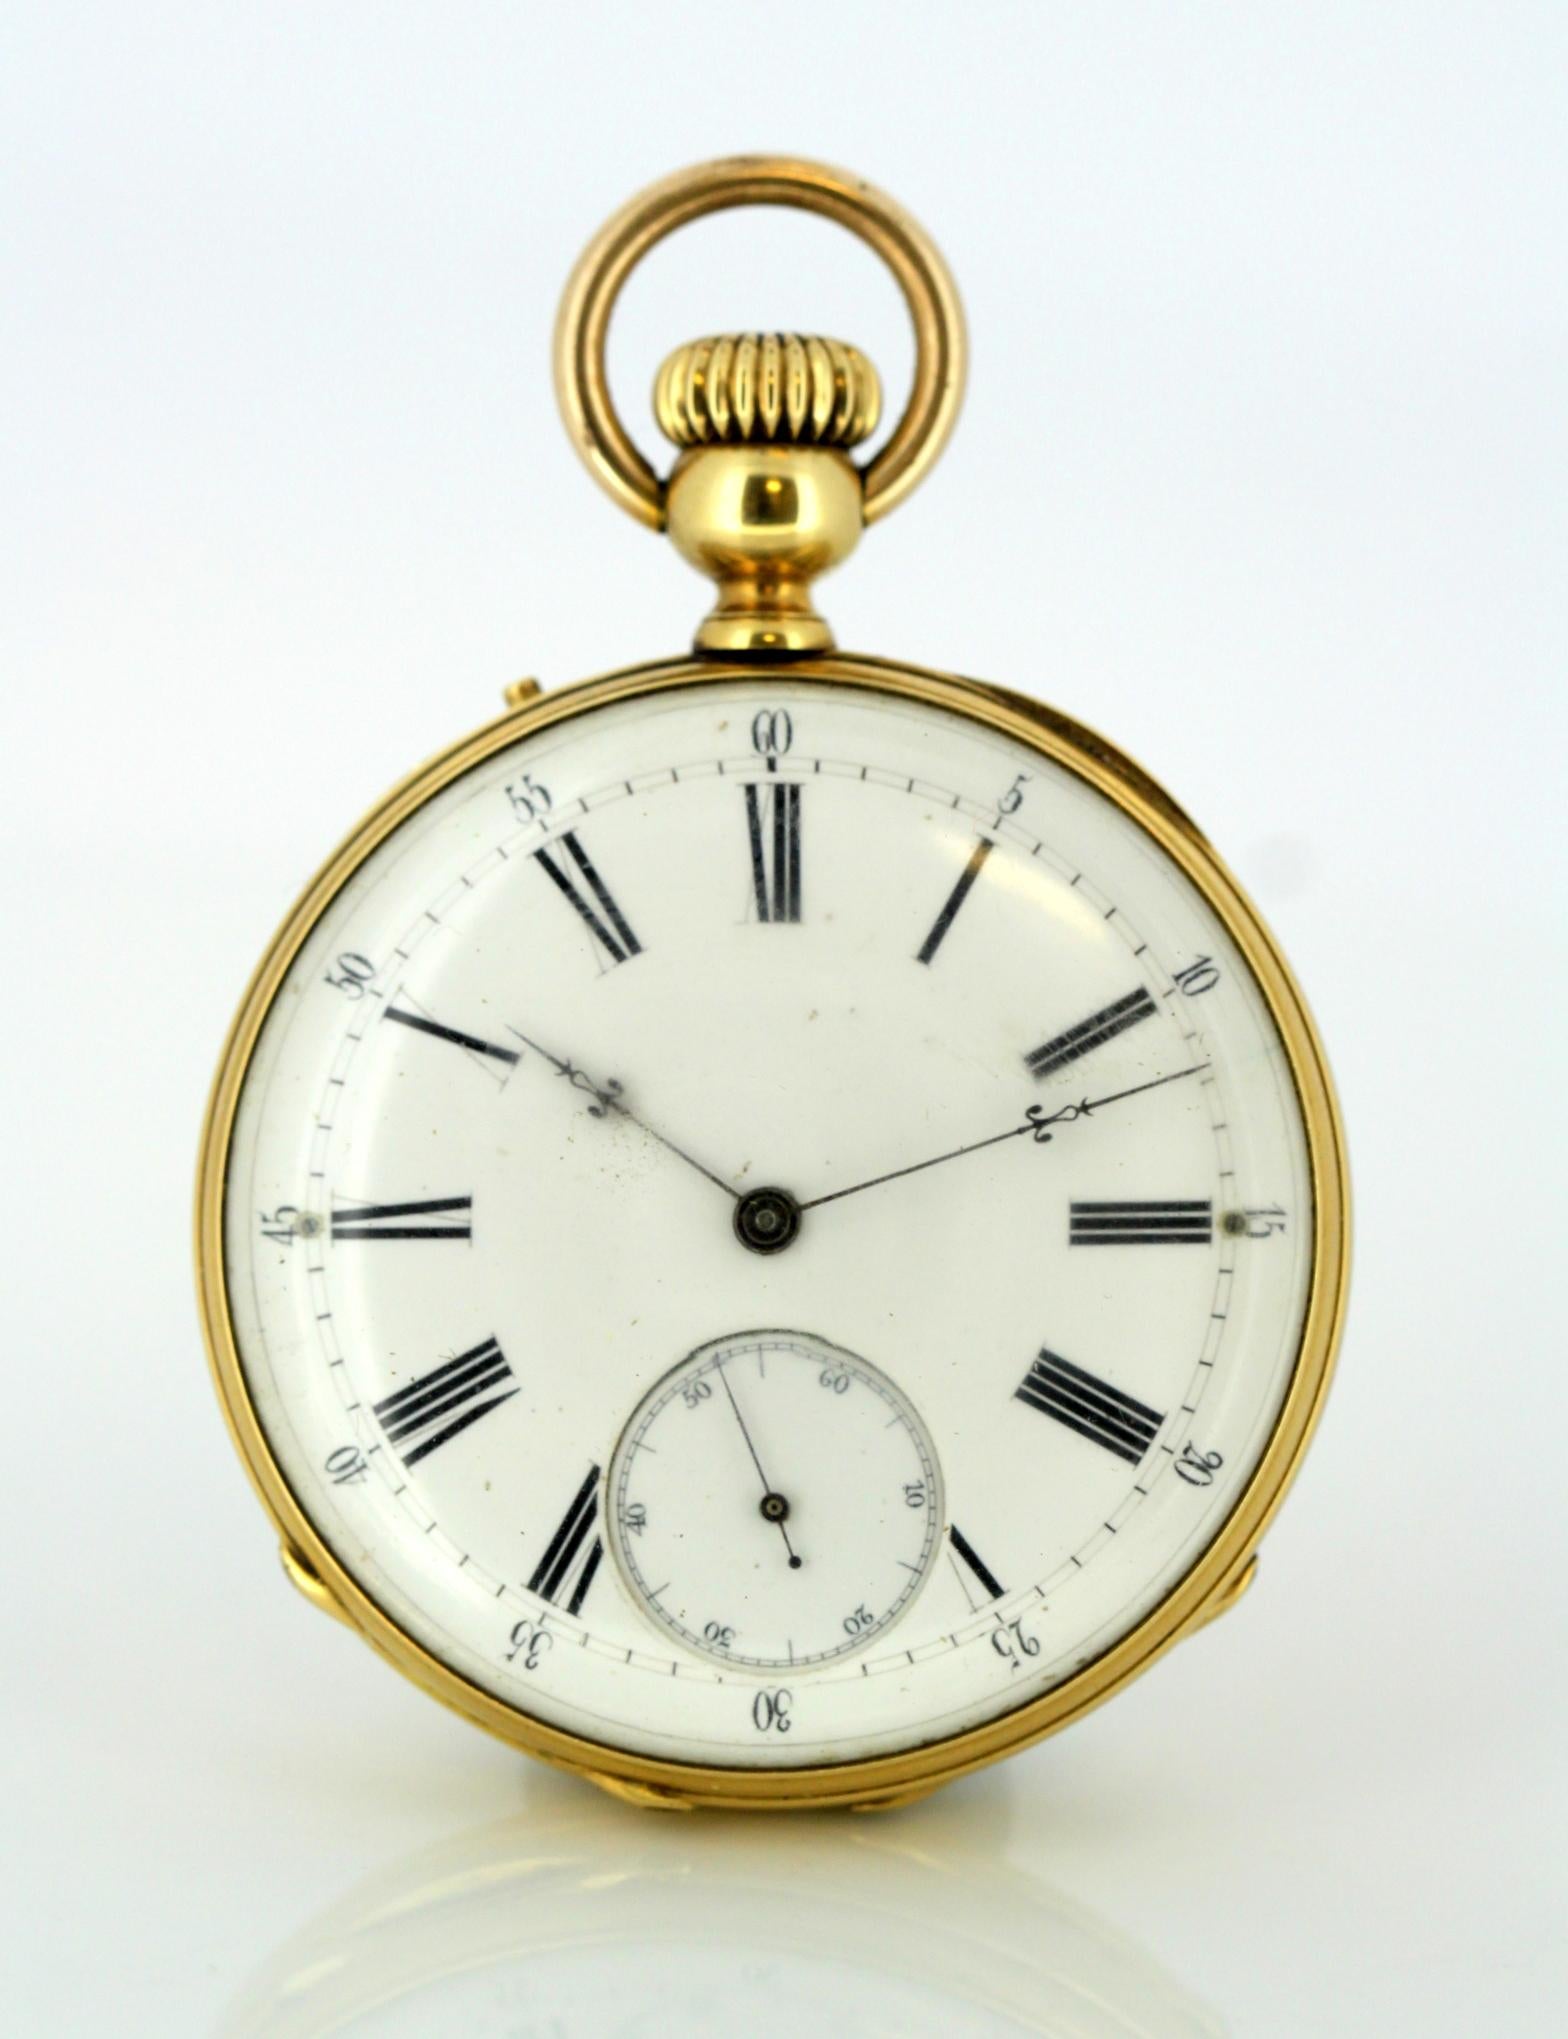 Antique Swiss 18 Karat Yellow Gold Pocket Watch by Amore Spiral Breguet, 1920s 2